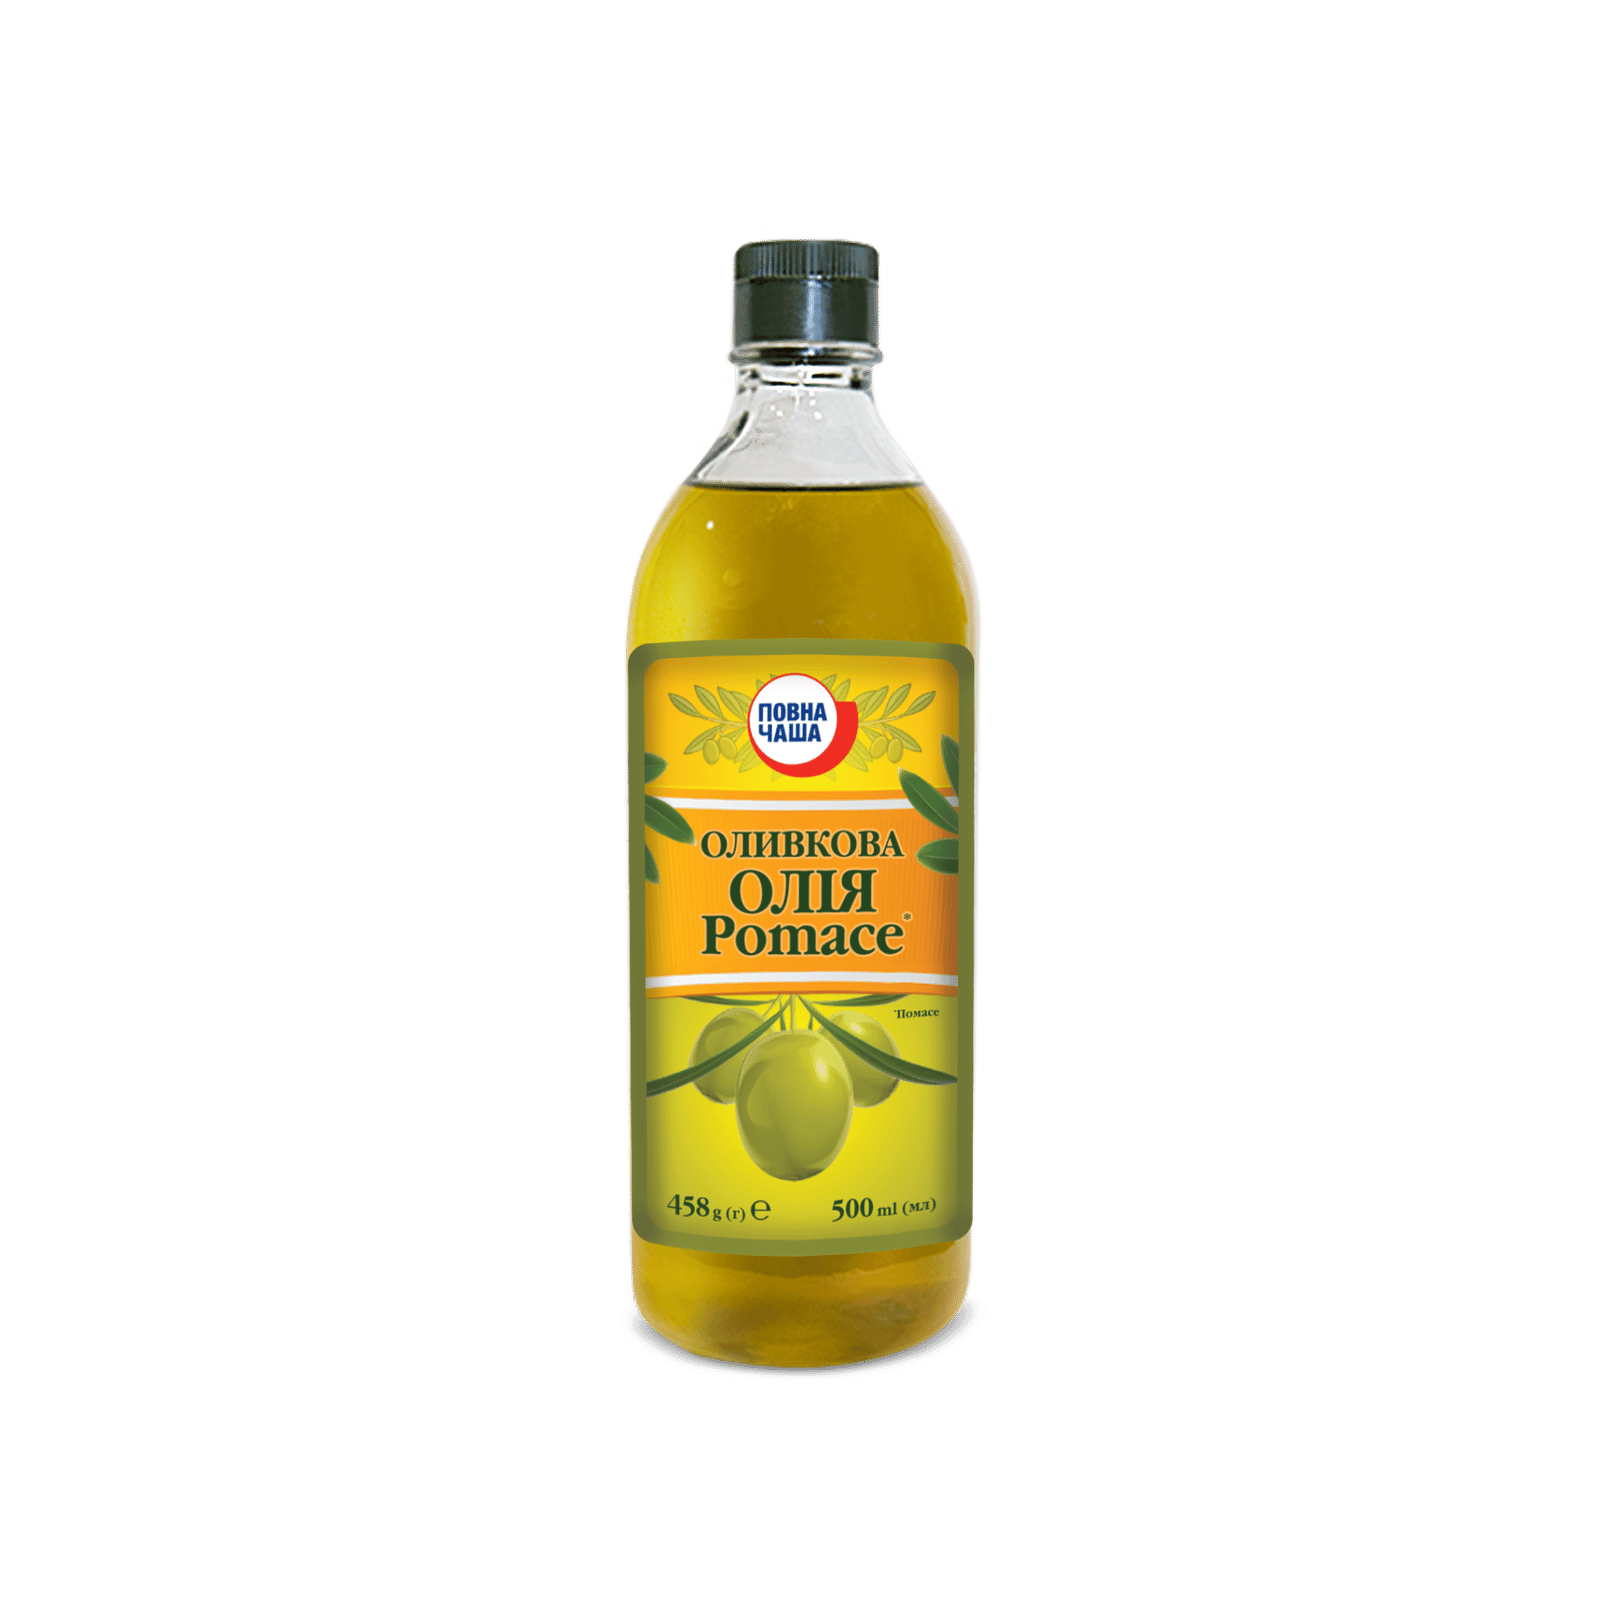 Оливкова олія Pomace «Повна Чаша»® - 1